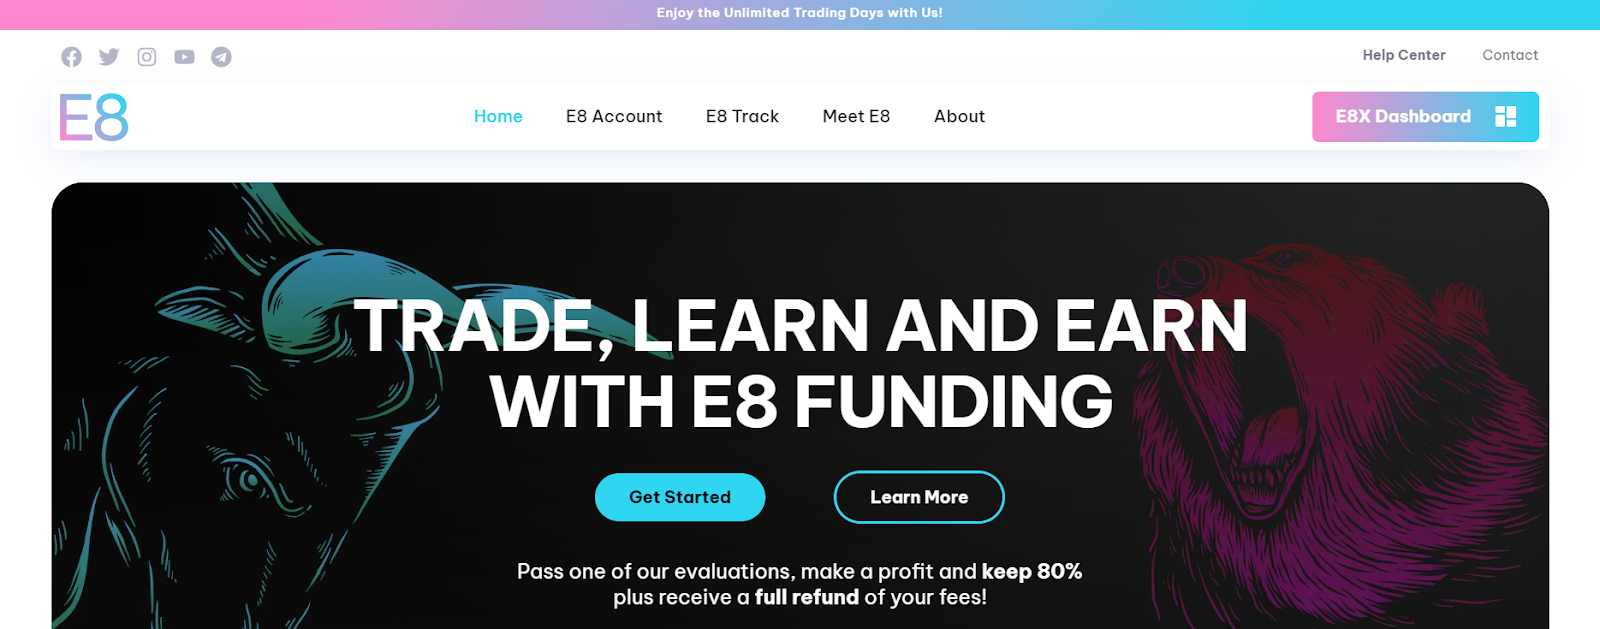 Revisione dell’E8 Funding - Dashboard E8X